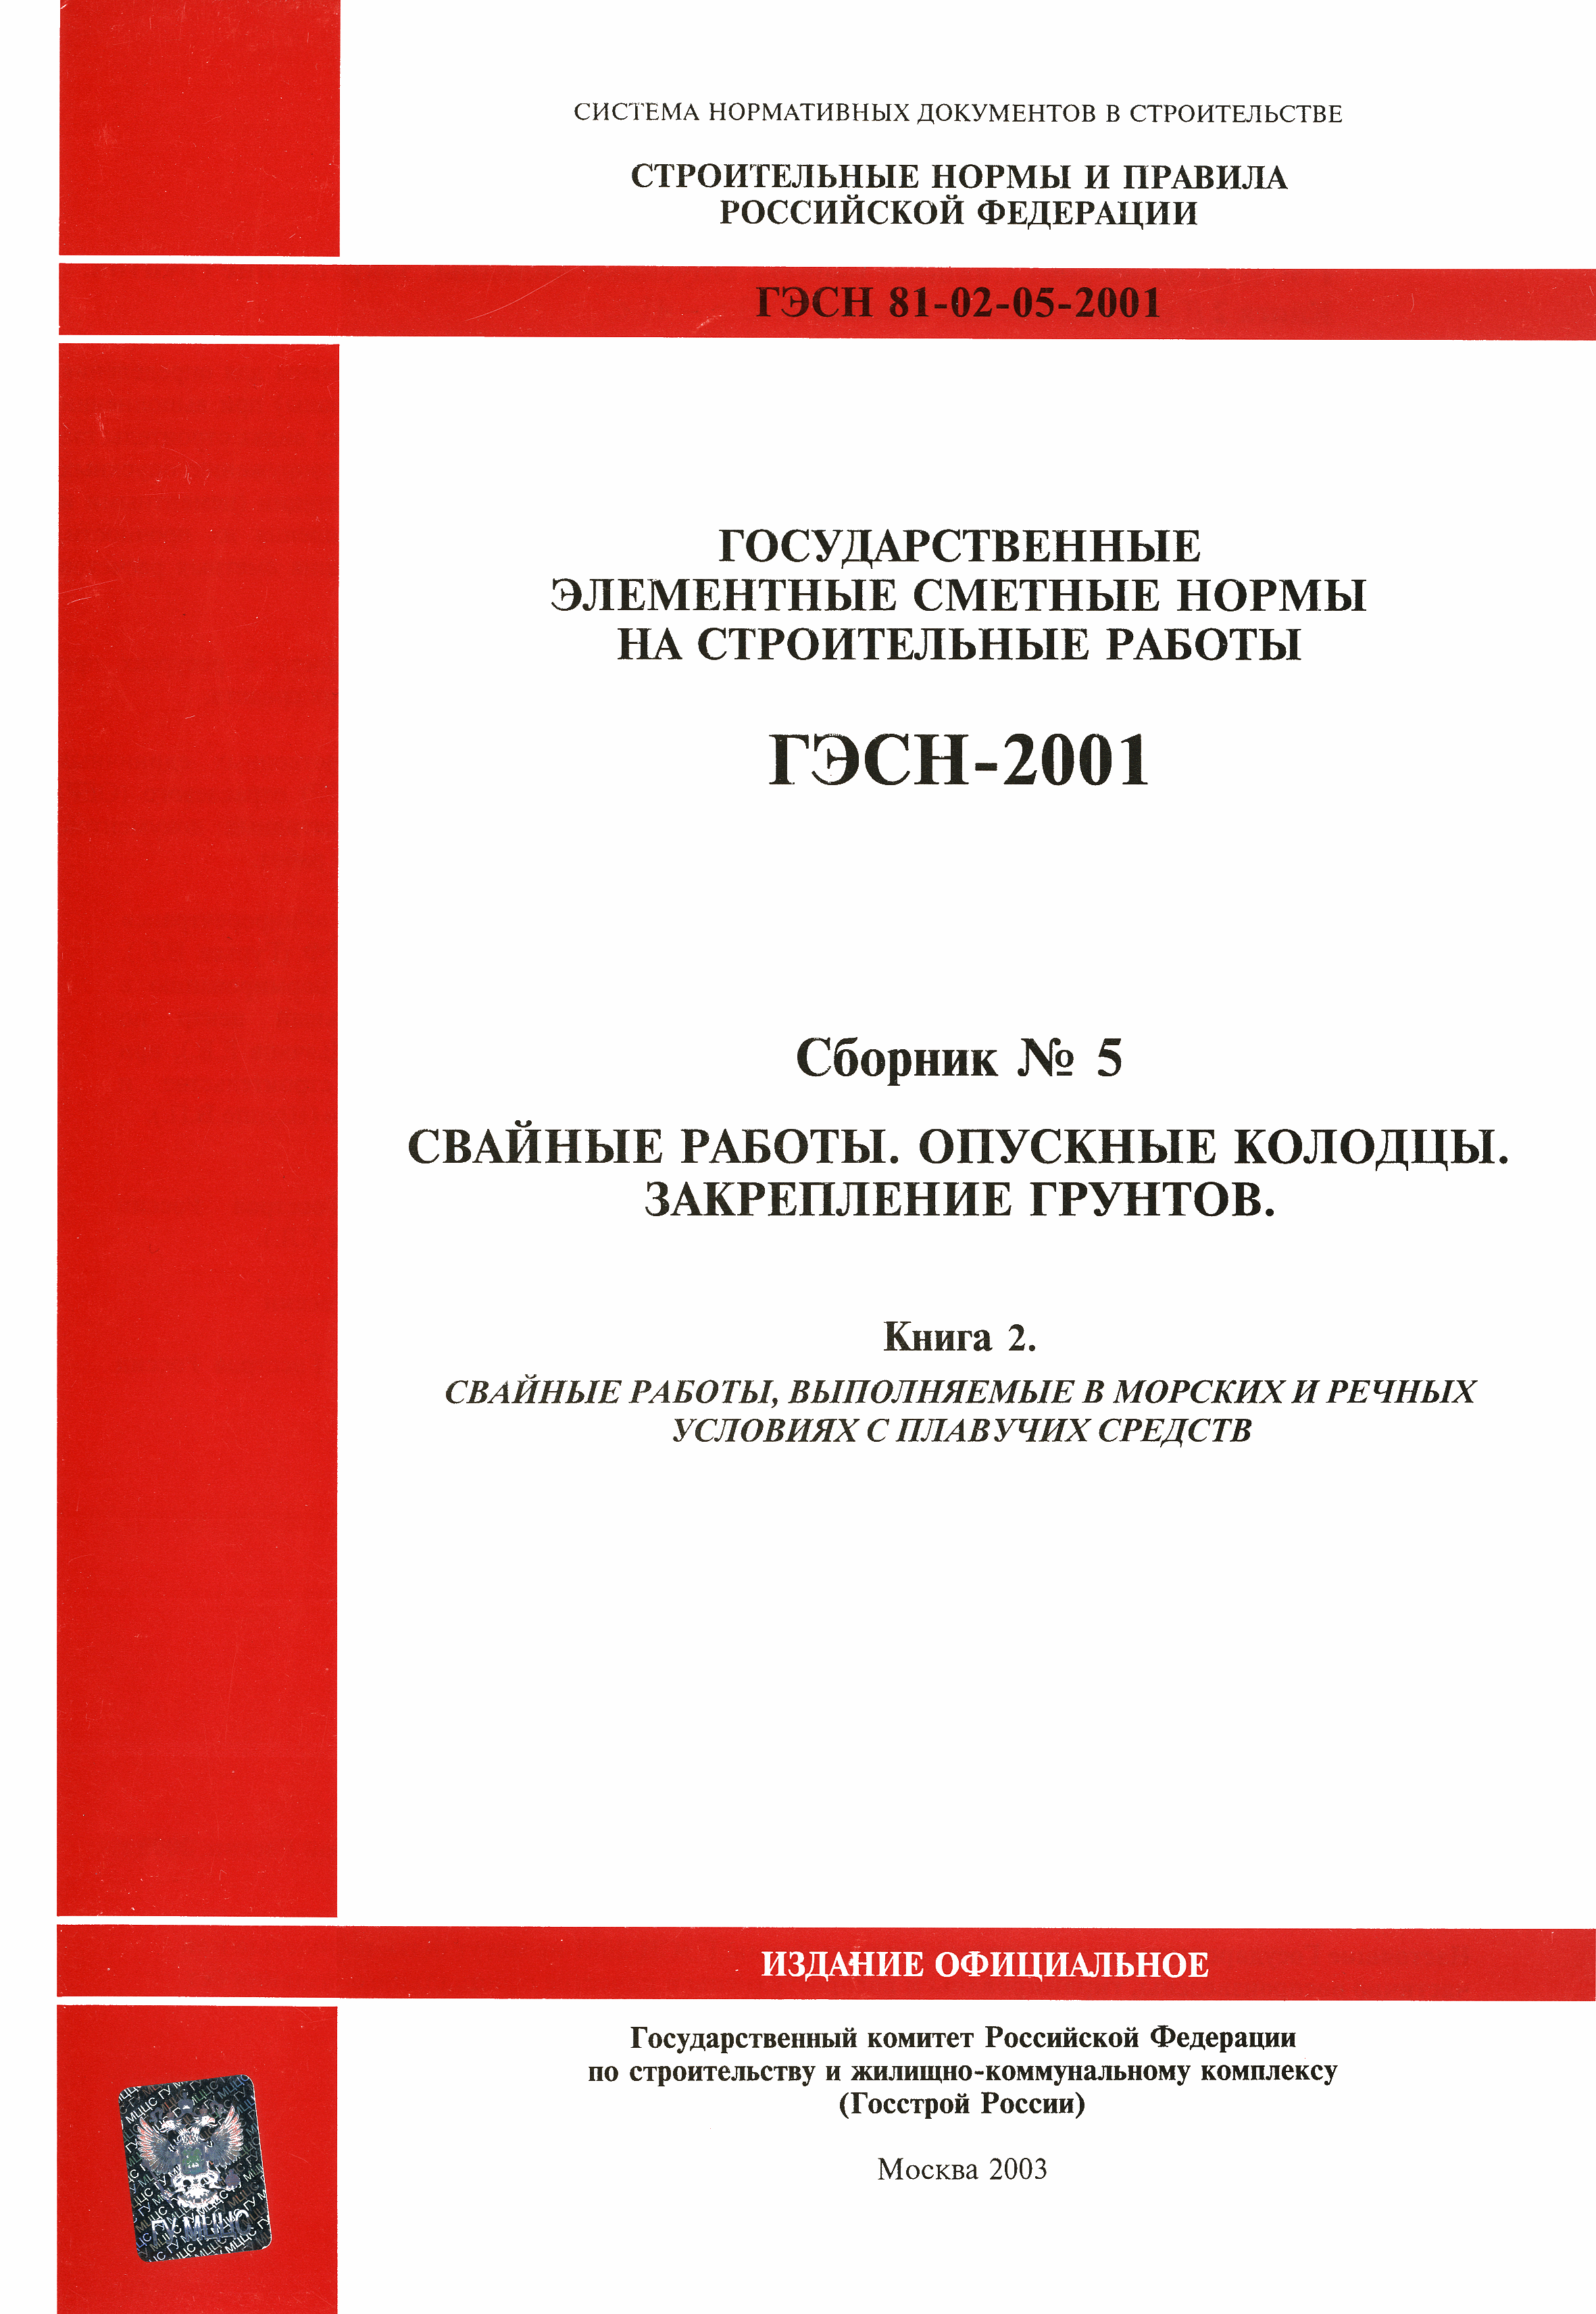 ГЭСН 2001-05